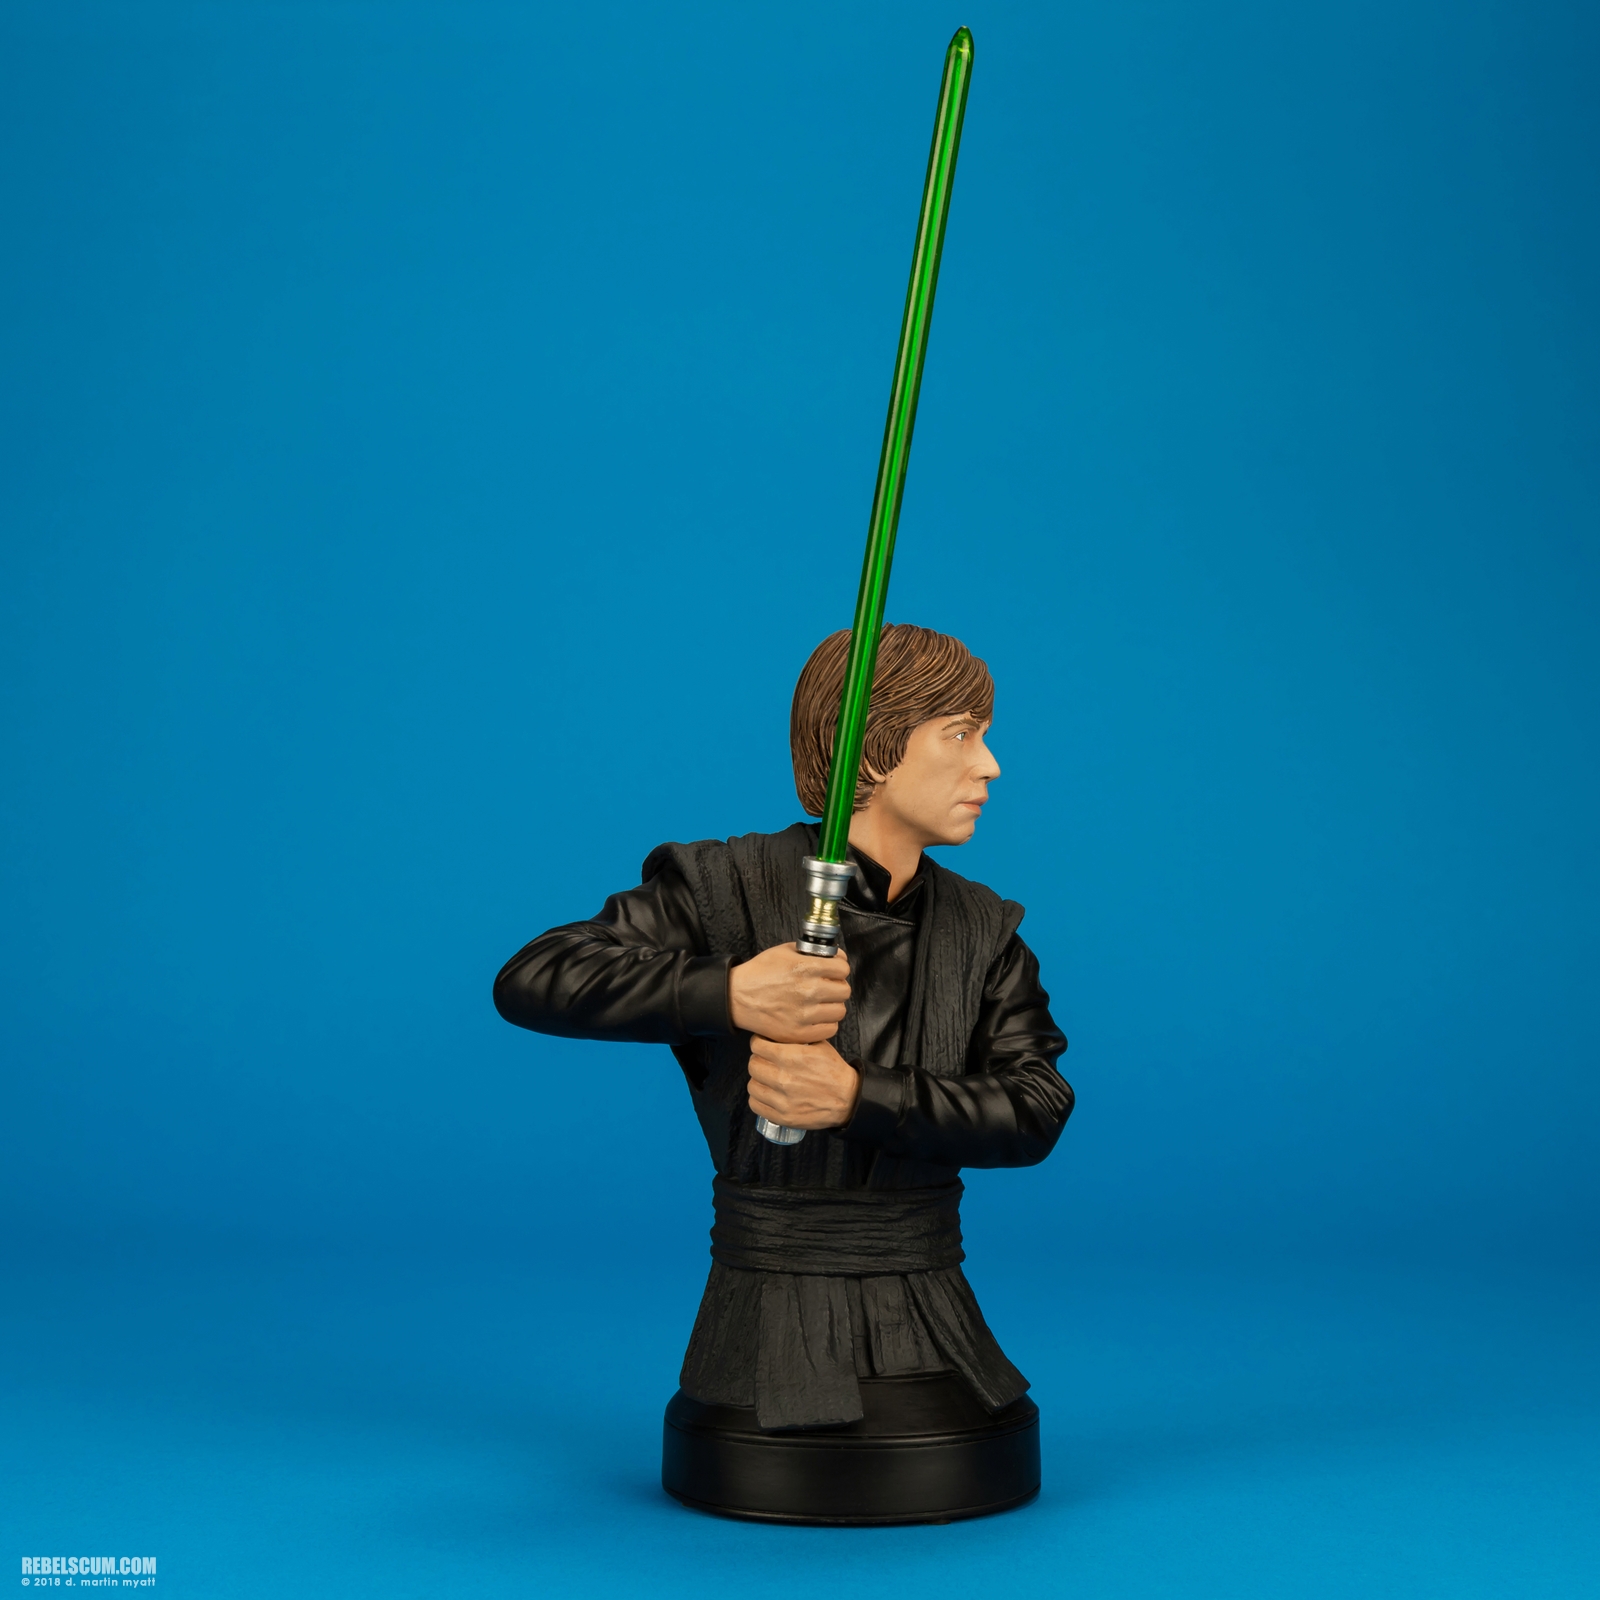 Luke-Skywalker-Jedi-Knight-Mini-Bust-Gentle-Giant-002.jpg